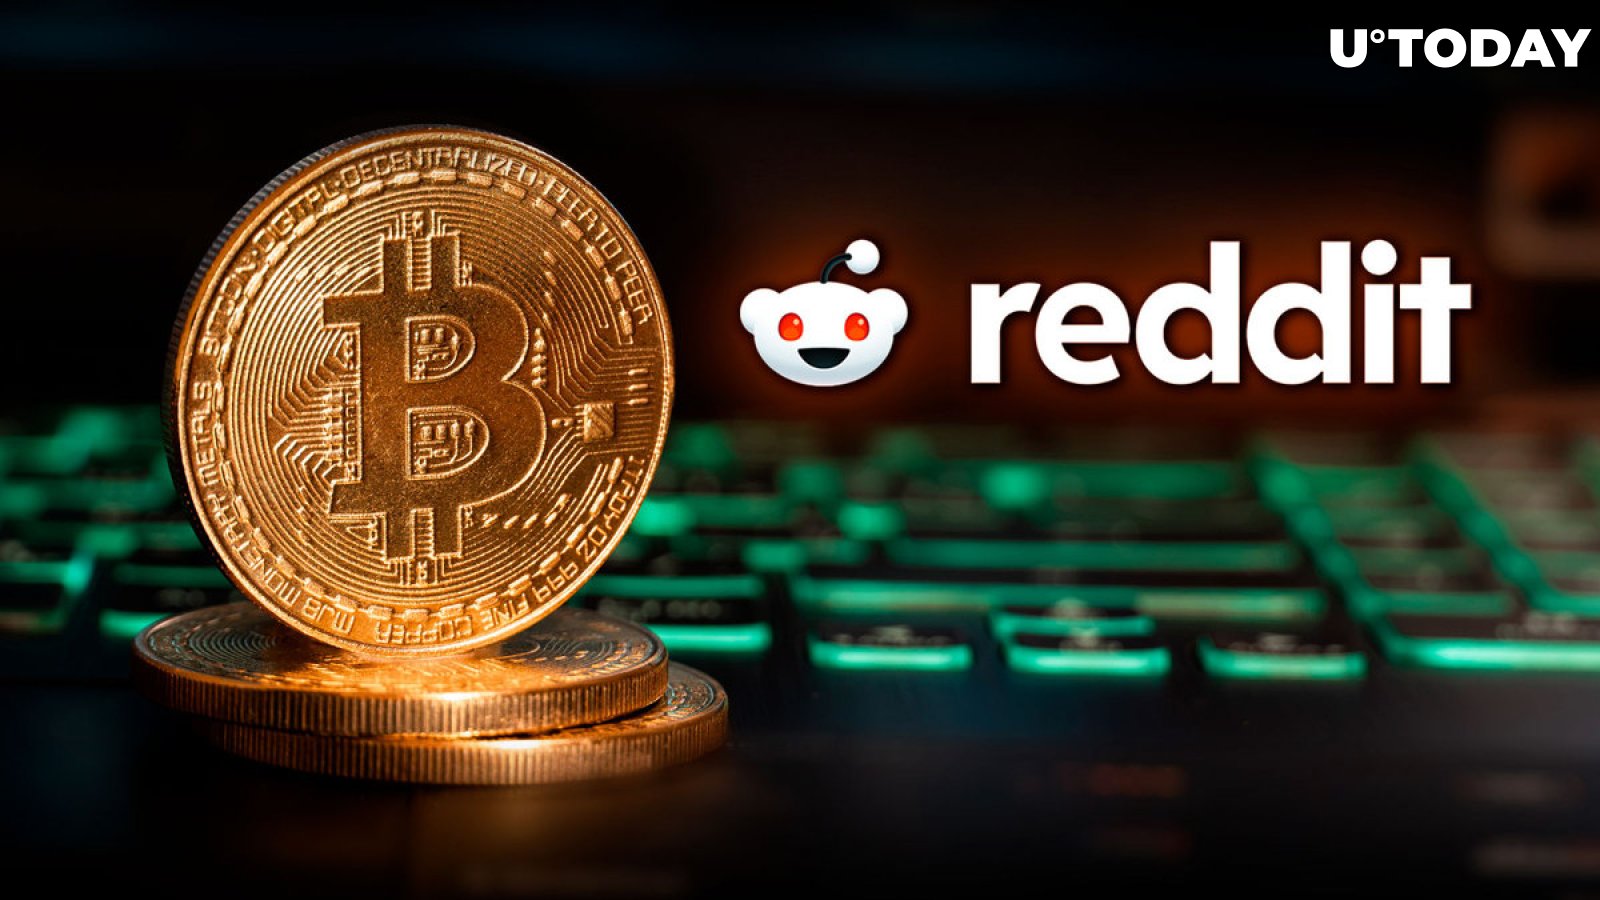 Esta publicación viral de Bitcoin en Reddit podría causar una ilusión grave